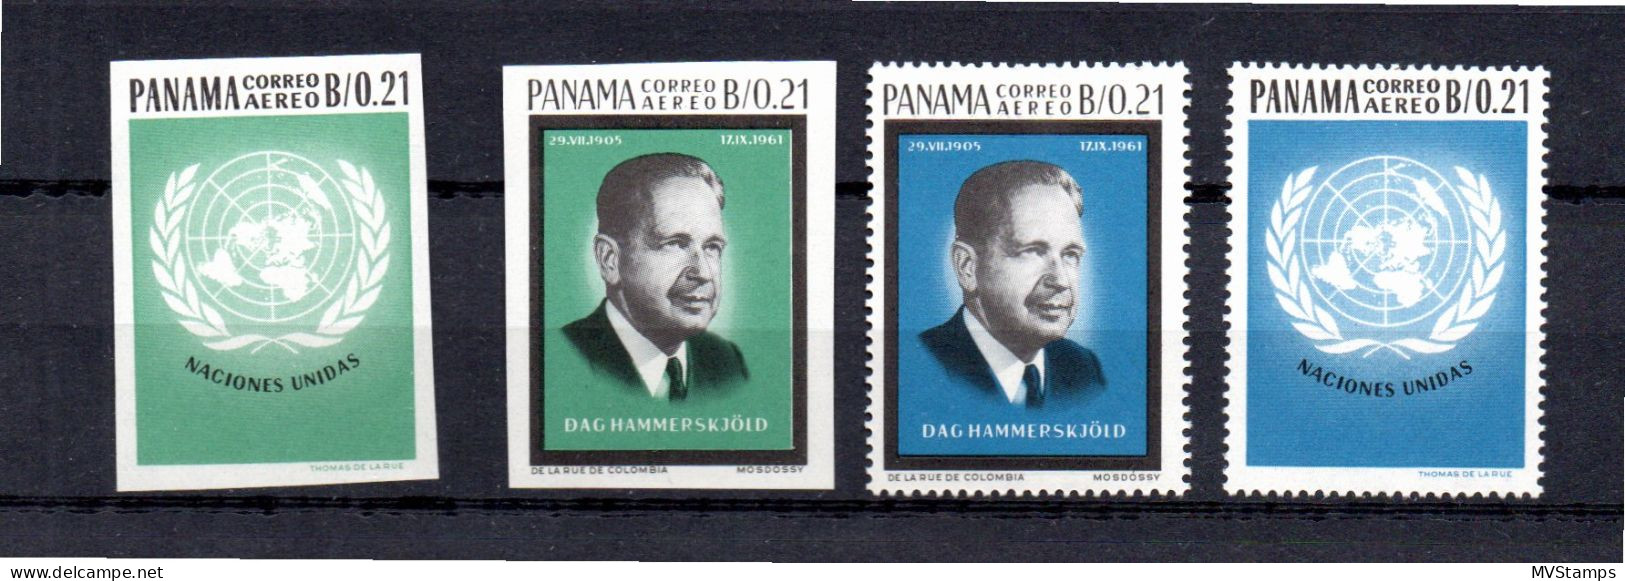 Panama 1964 Set UNO/Hammerskjold Stamps (Michel 759/62) MNH - Panama